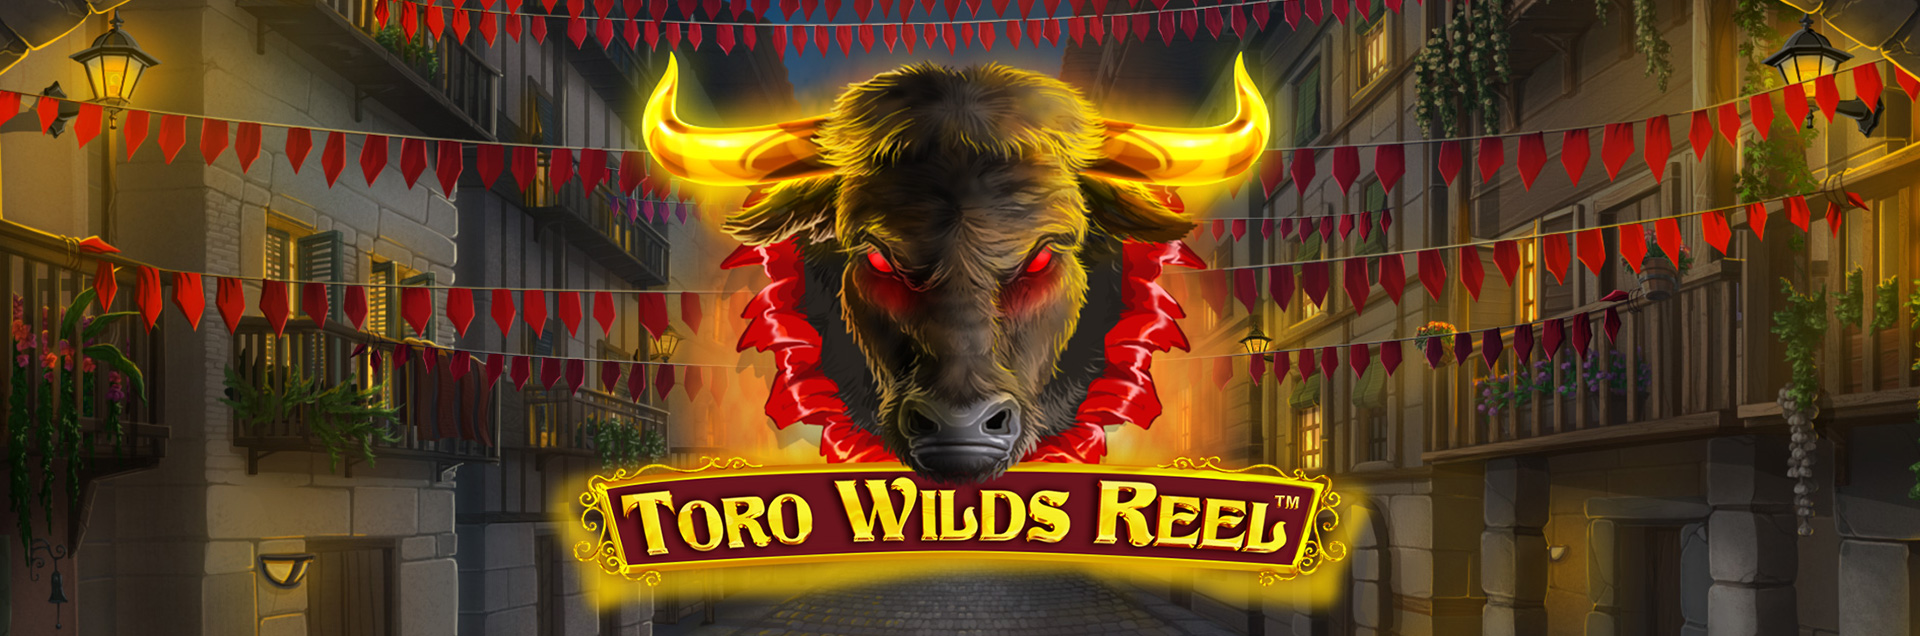 Toro Wilds Reel header games fan